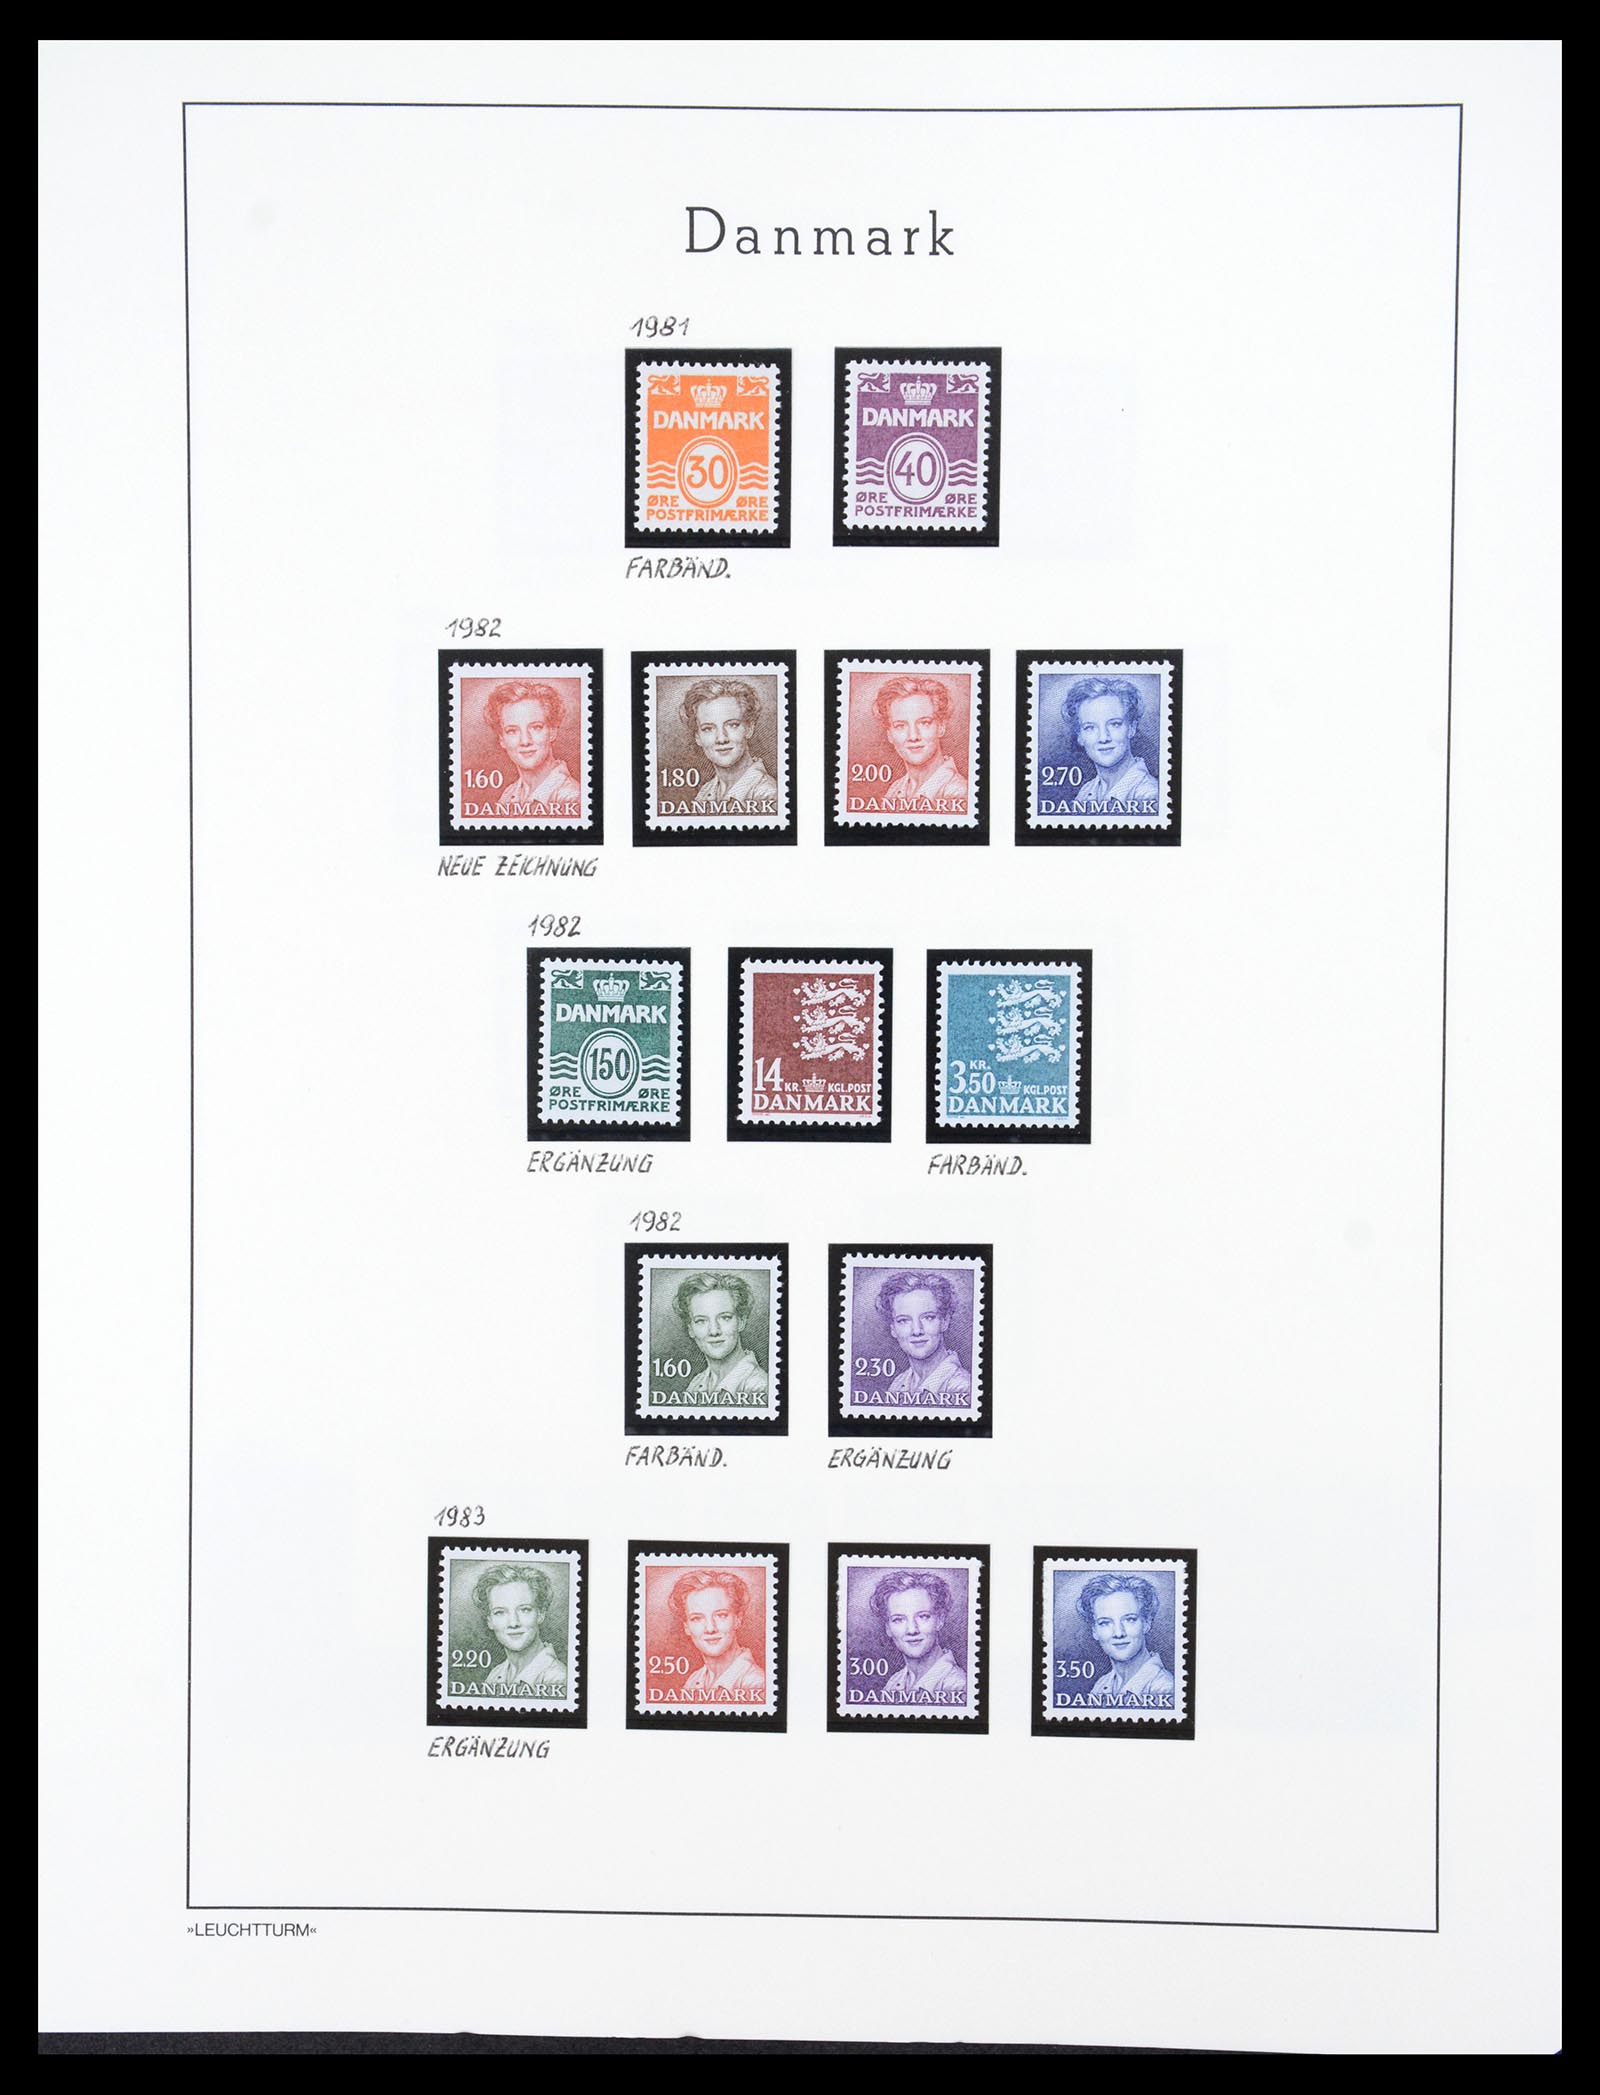 36612 114 - Stamp collection 36612 Denemarken 1851-1990.